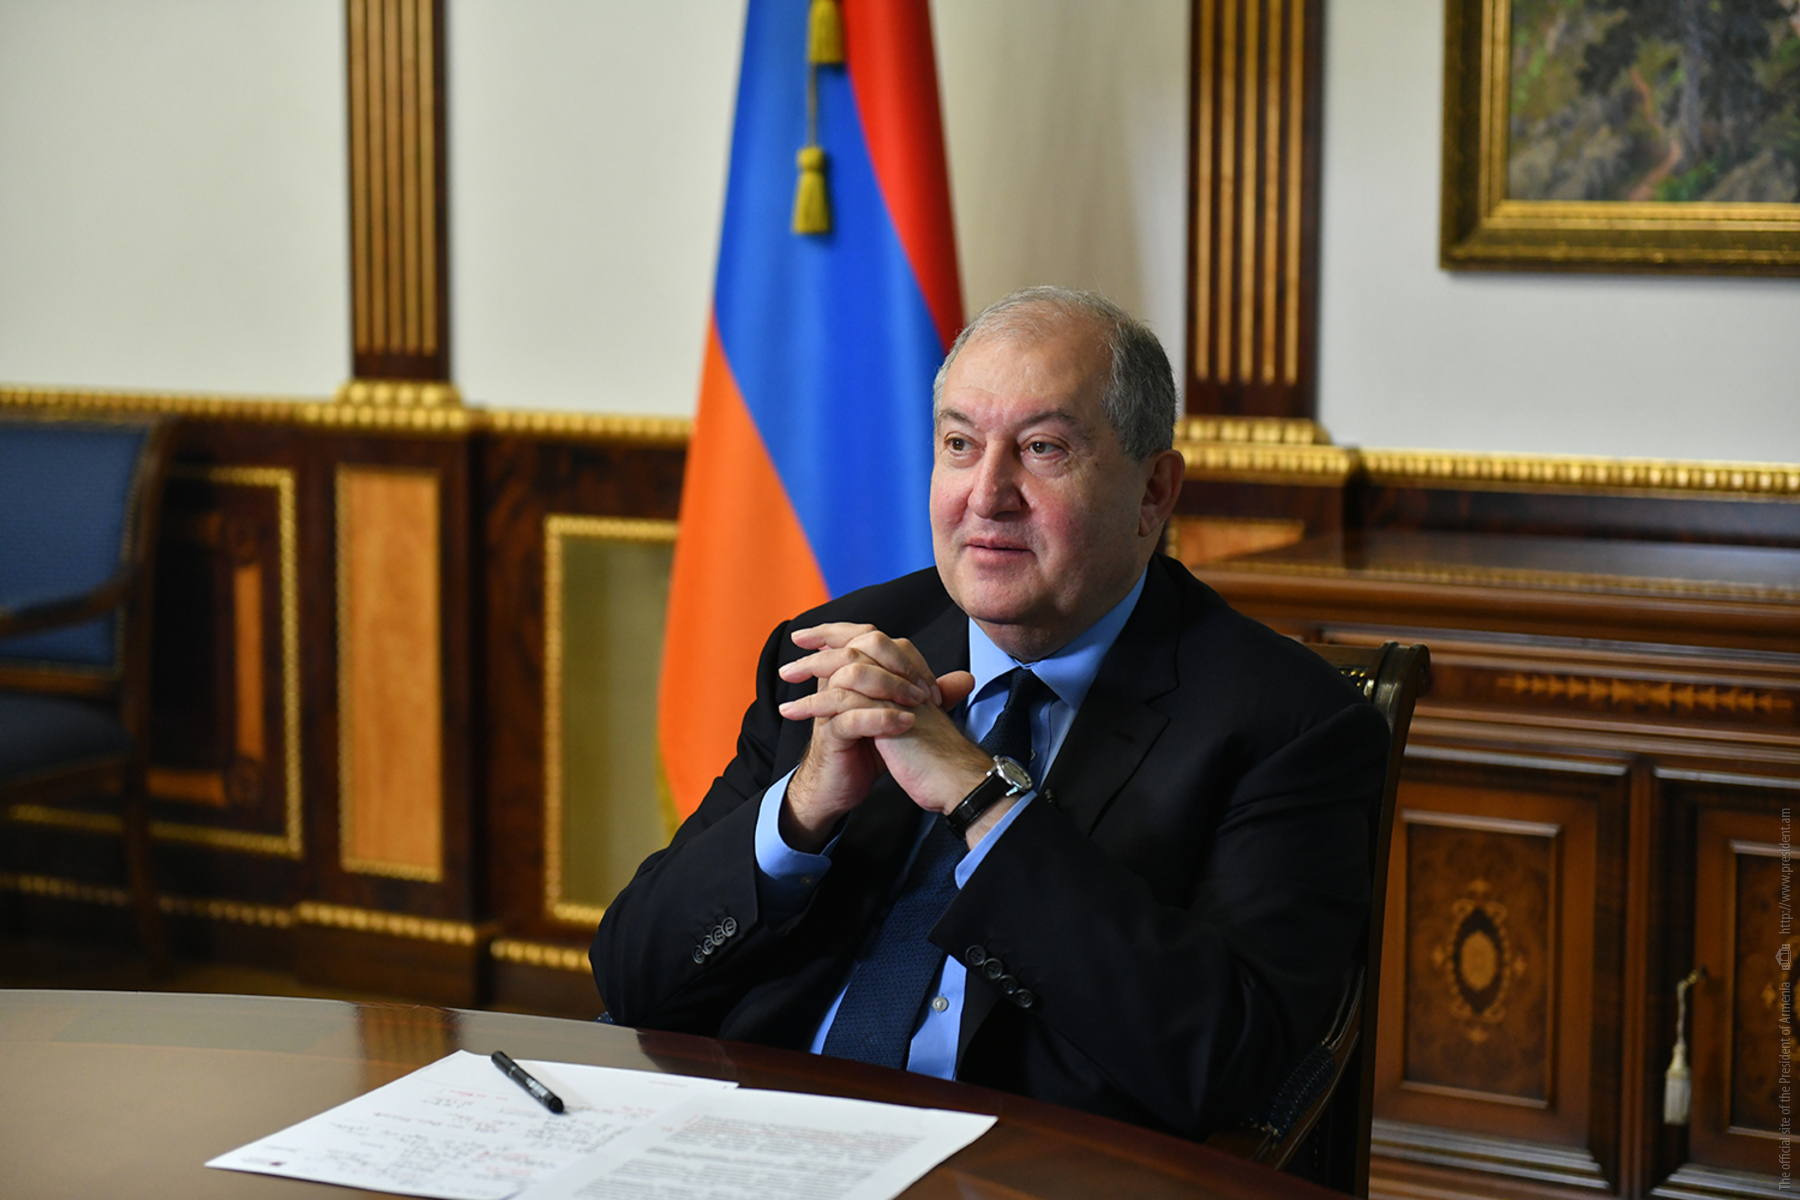 Ermenistan Cumhurbaşkanı, tüm siyasi aktörleri toplantıya davet etti